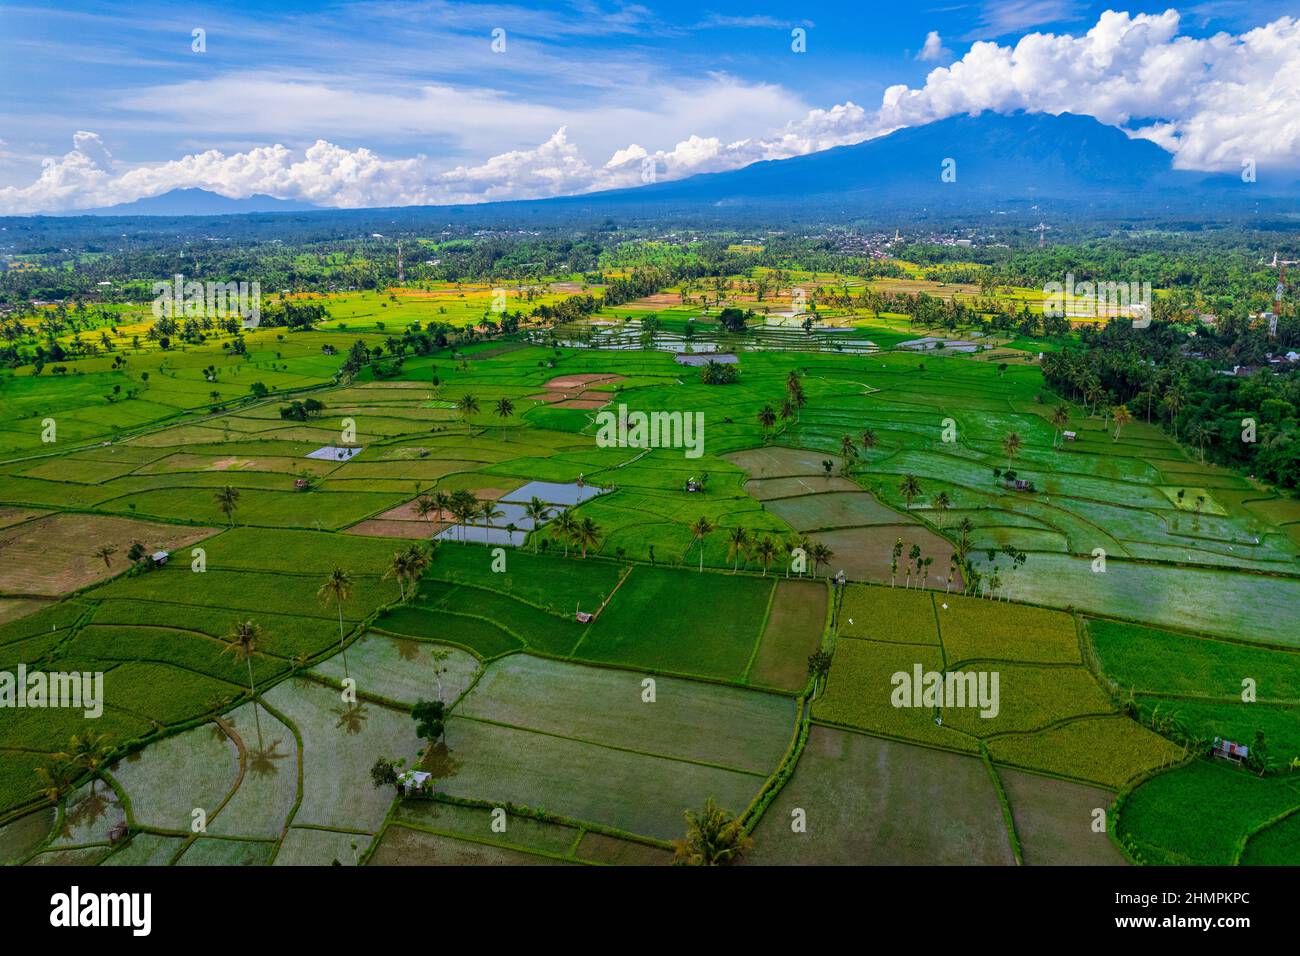 Vue aérienne des rizières tropicales, Lombok, Indonésie Banque D'Images